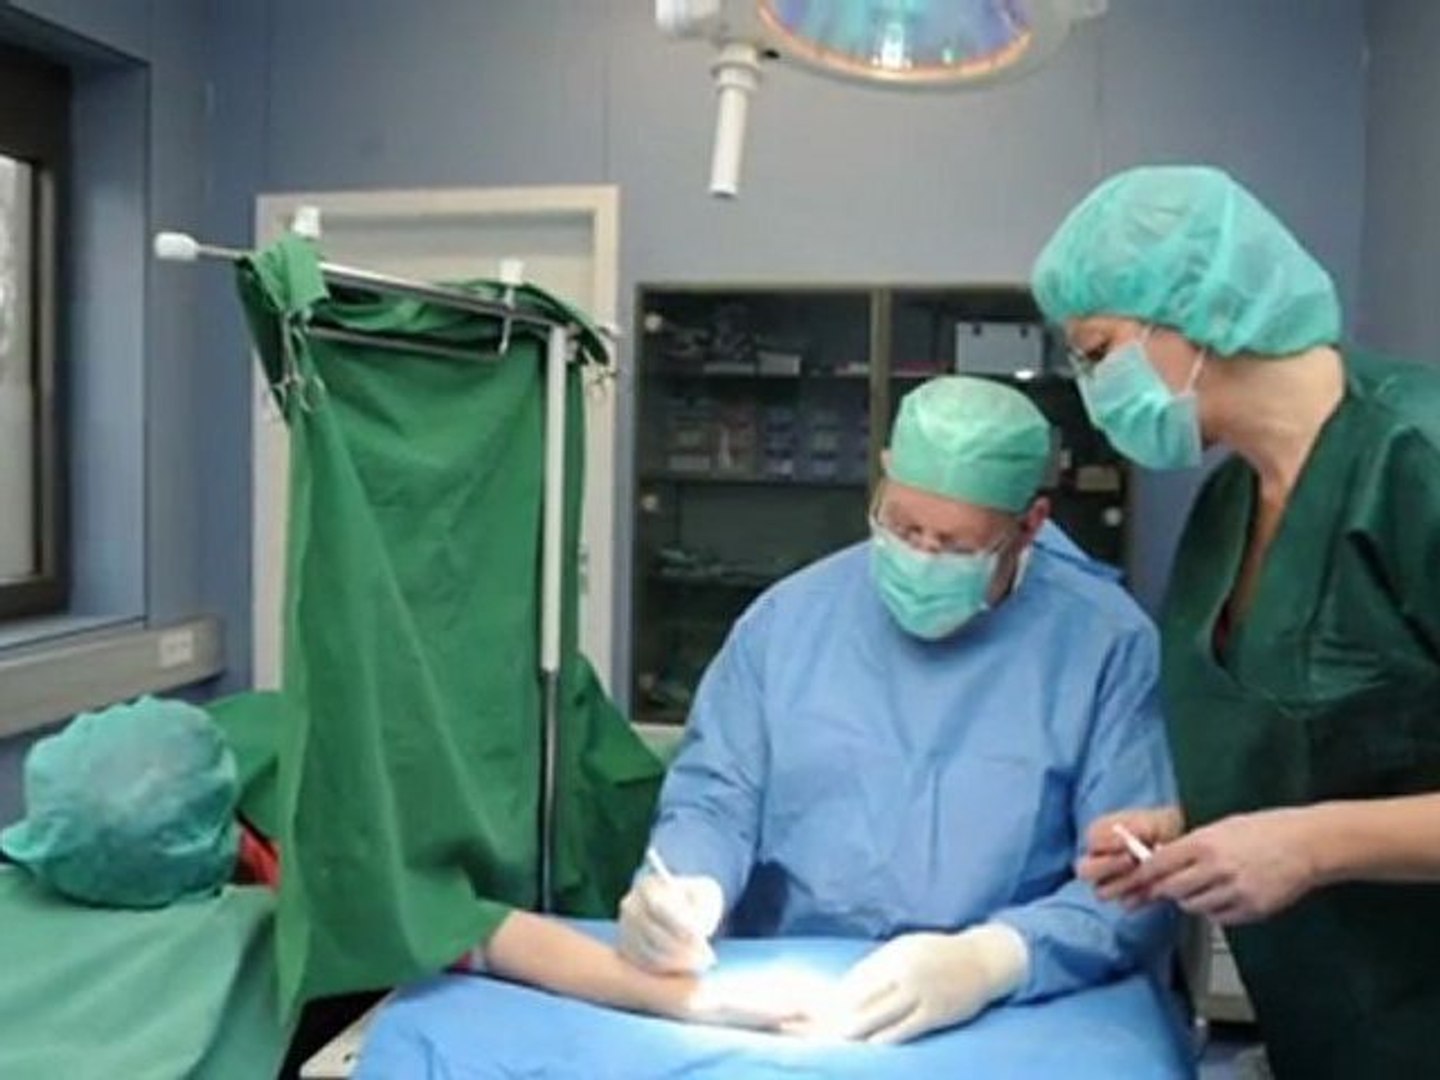 Handchirurgie Saarlouis Dr. med. Peter Bongers ... - Video Dailymotion